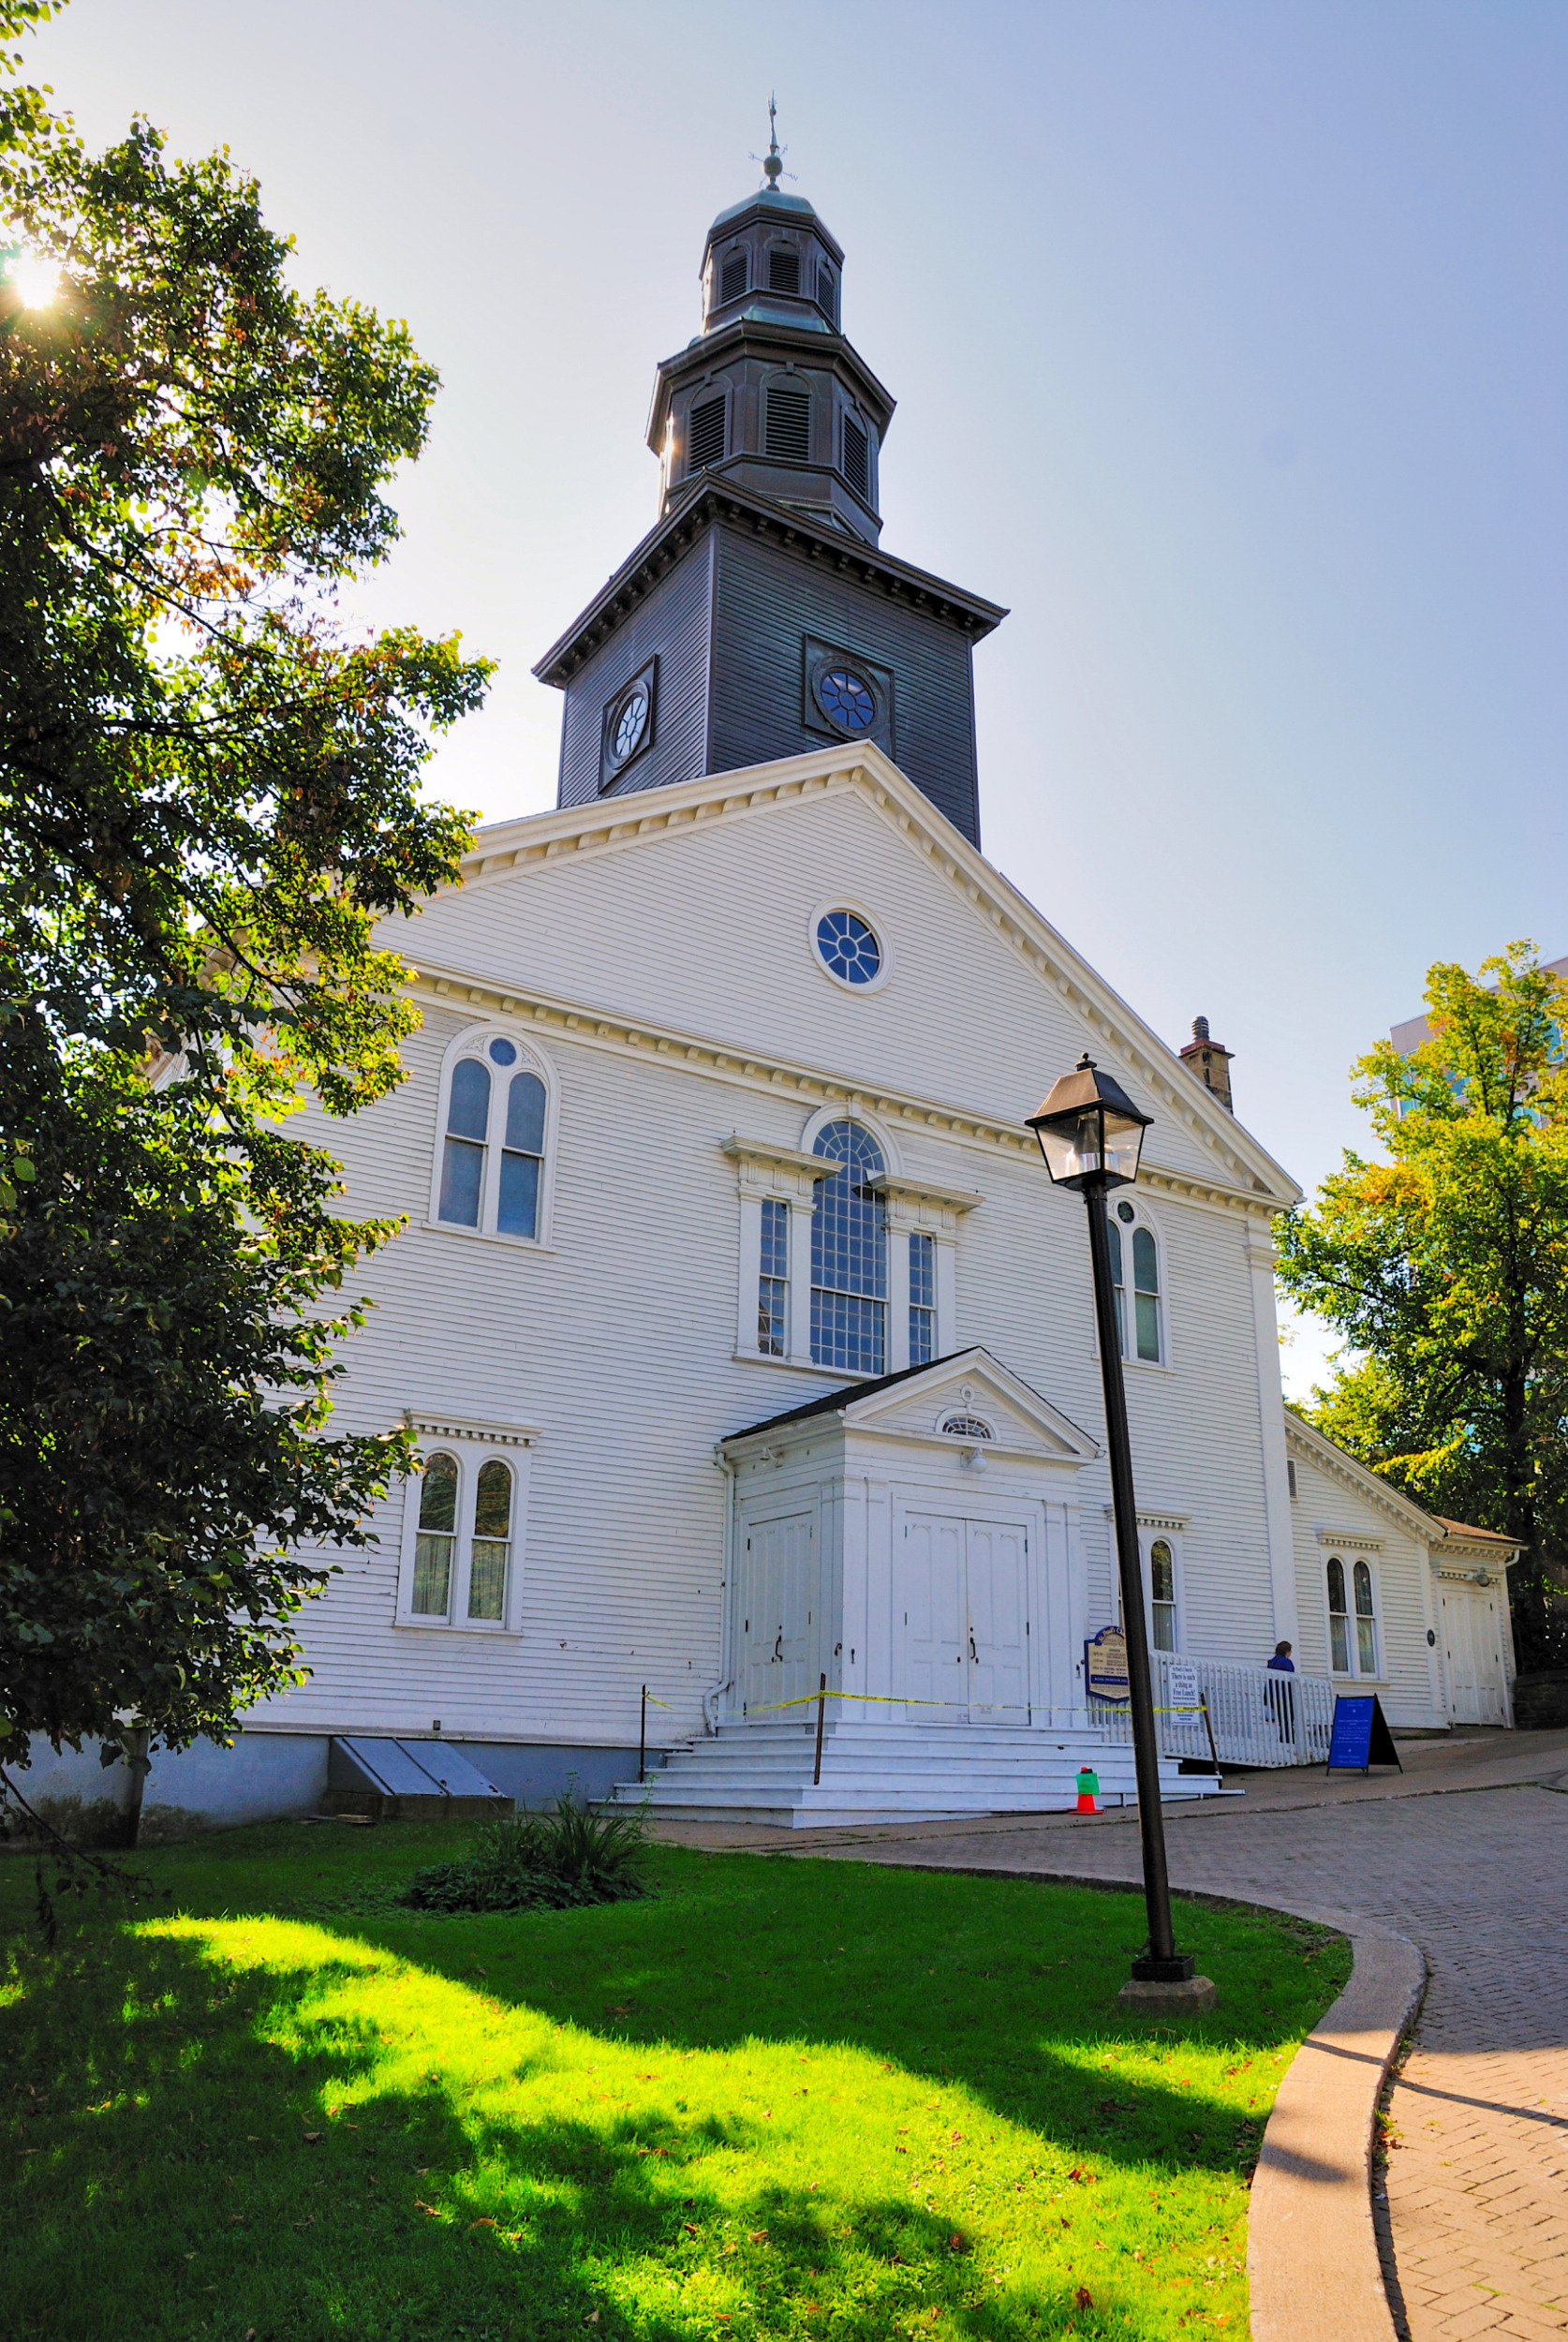 St. Paul's Church Halifax